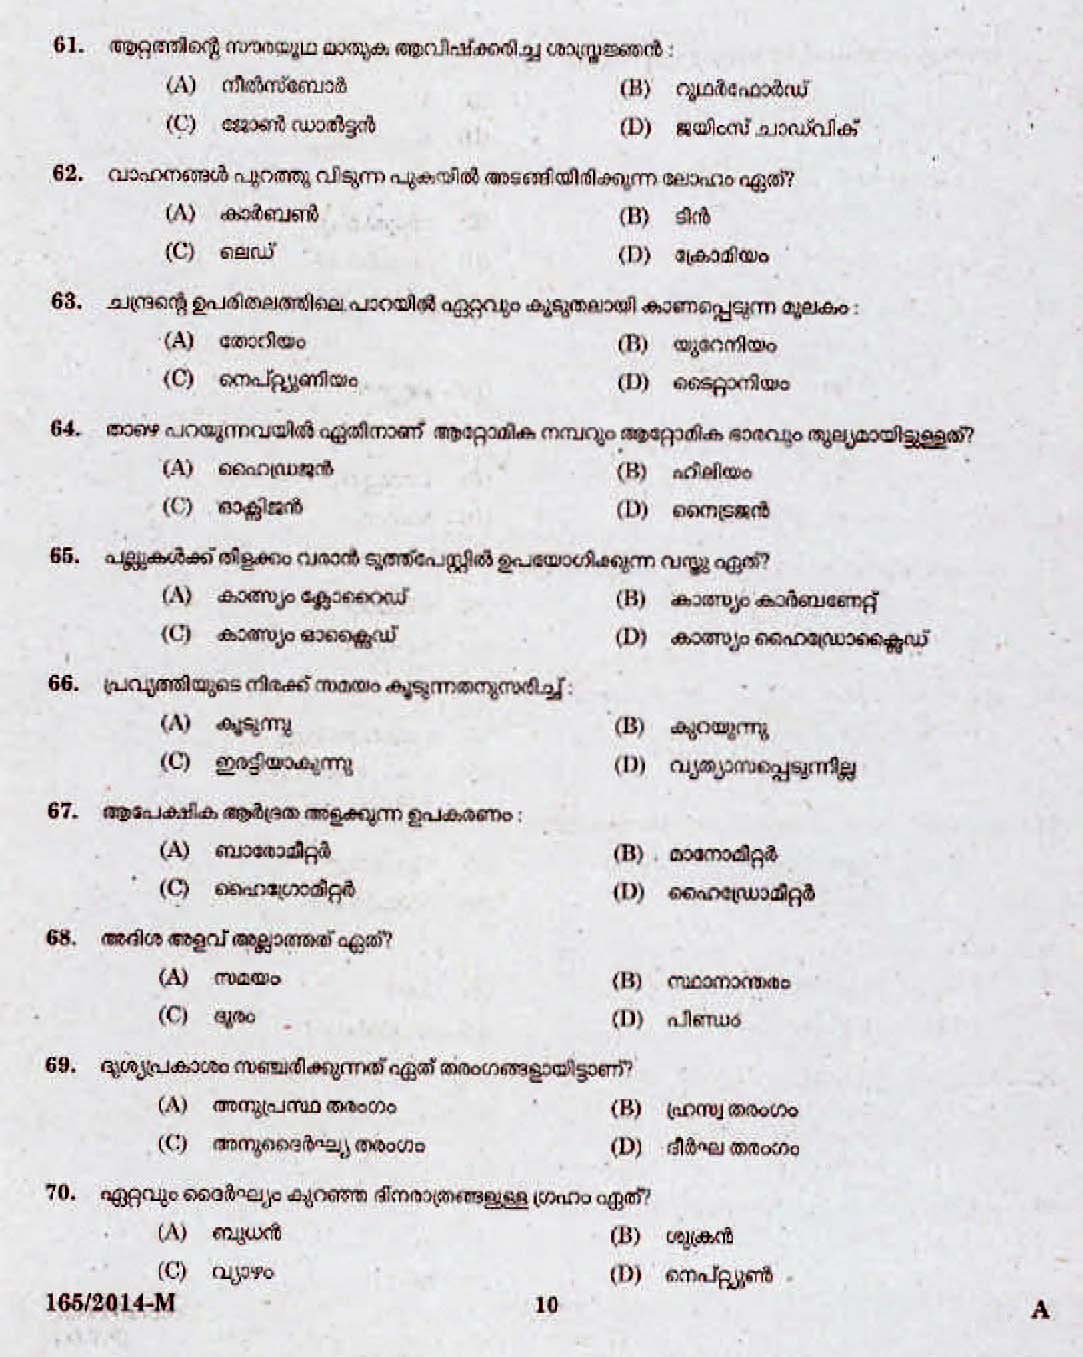 Kerala Last Grade Servants Exam 2014 Question Paper Code 1652014 M 8